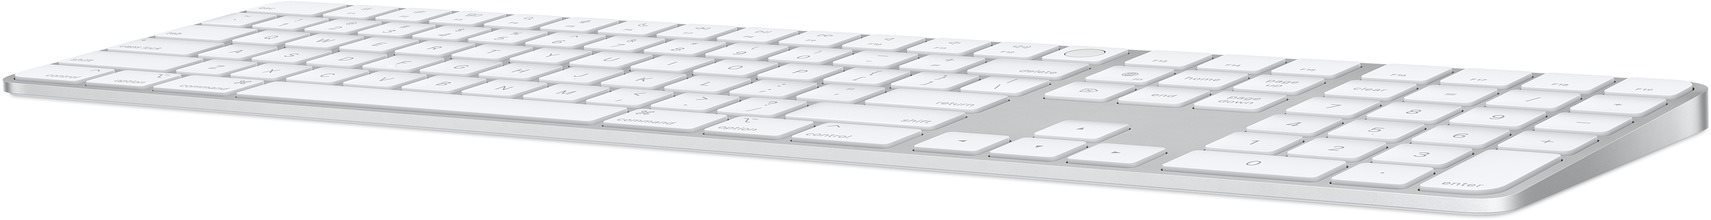 Tastatur Apple Magic Keyboard mit Touch ID und numerischem Tastenfeld, Silber - US Seitlicher Anblick